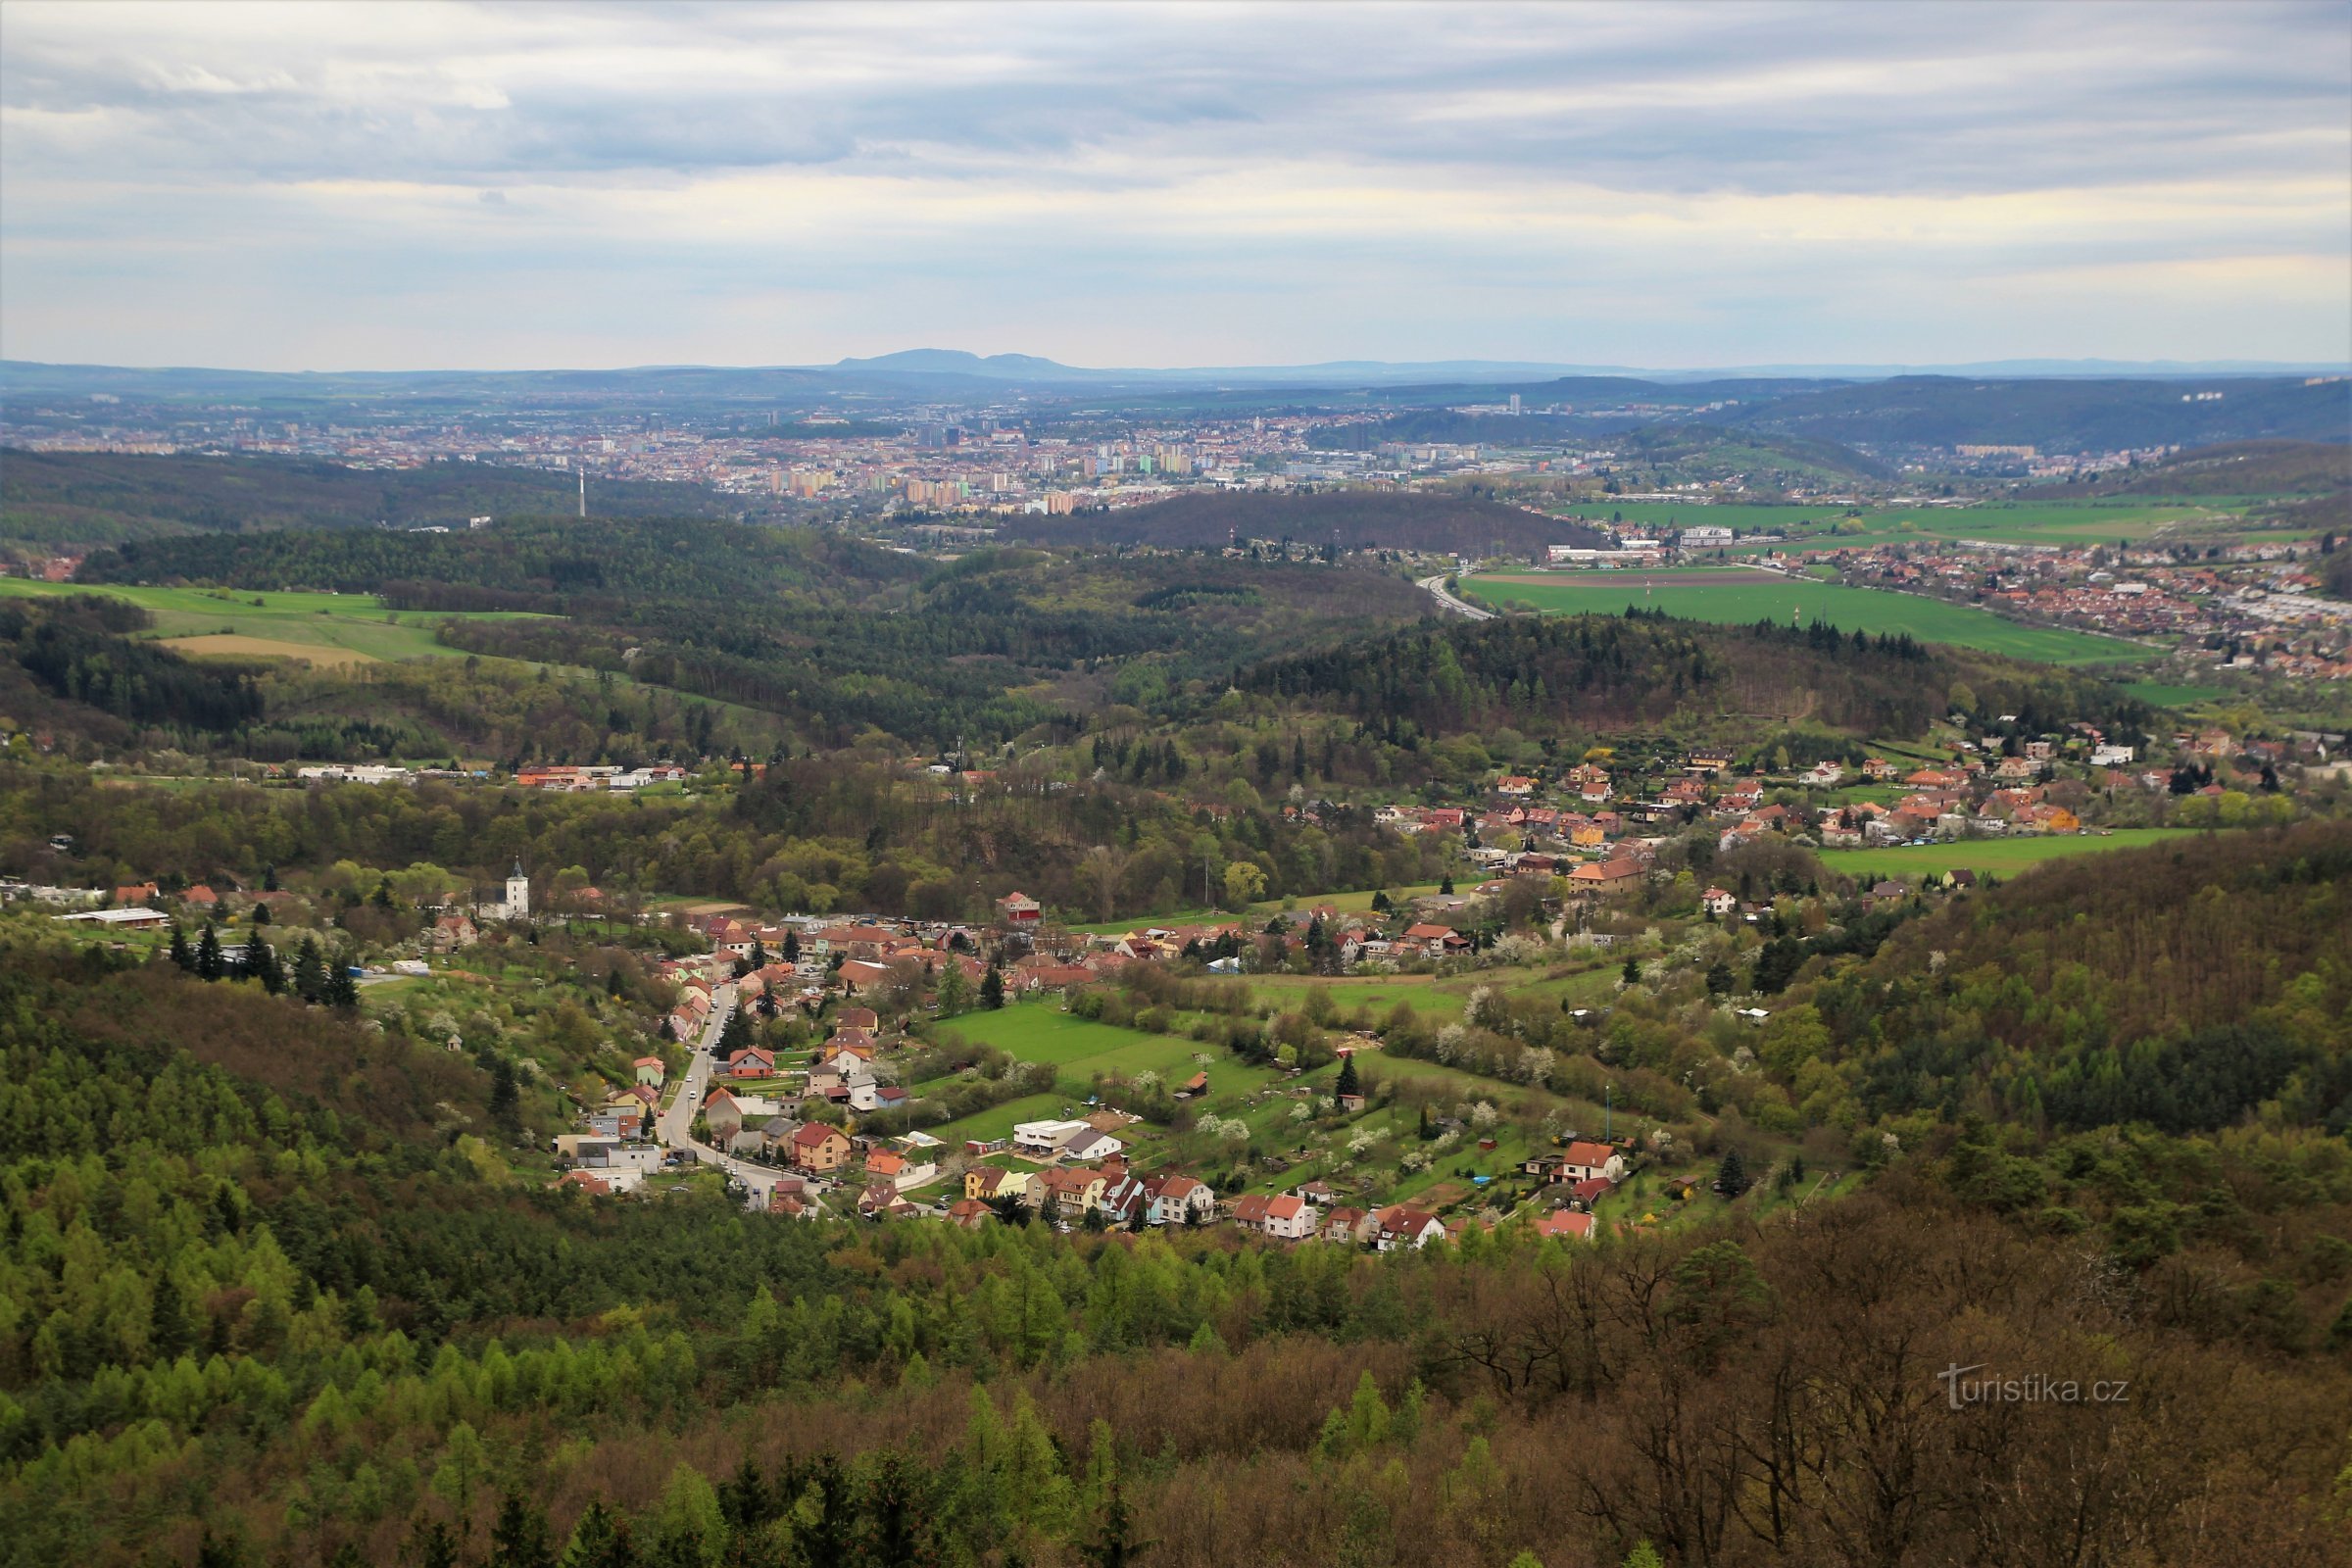 Uitzicht richting Brno, op de voorgrond ligt Lelekovice, op de achtergrond de bergkam van Pálava aan de horizon